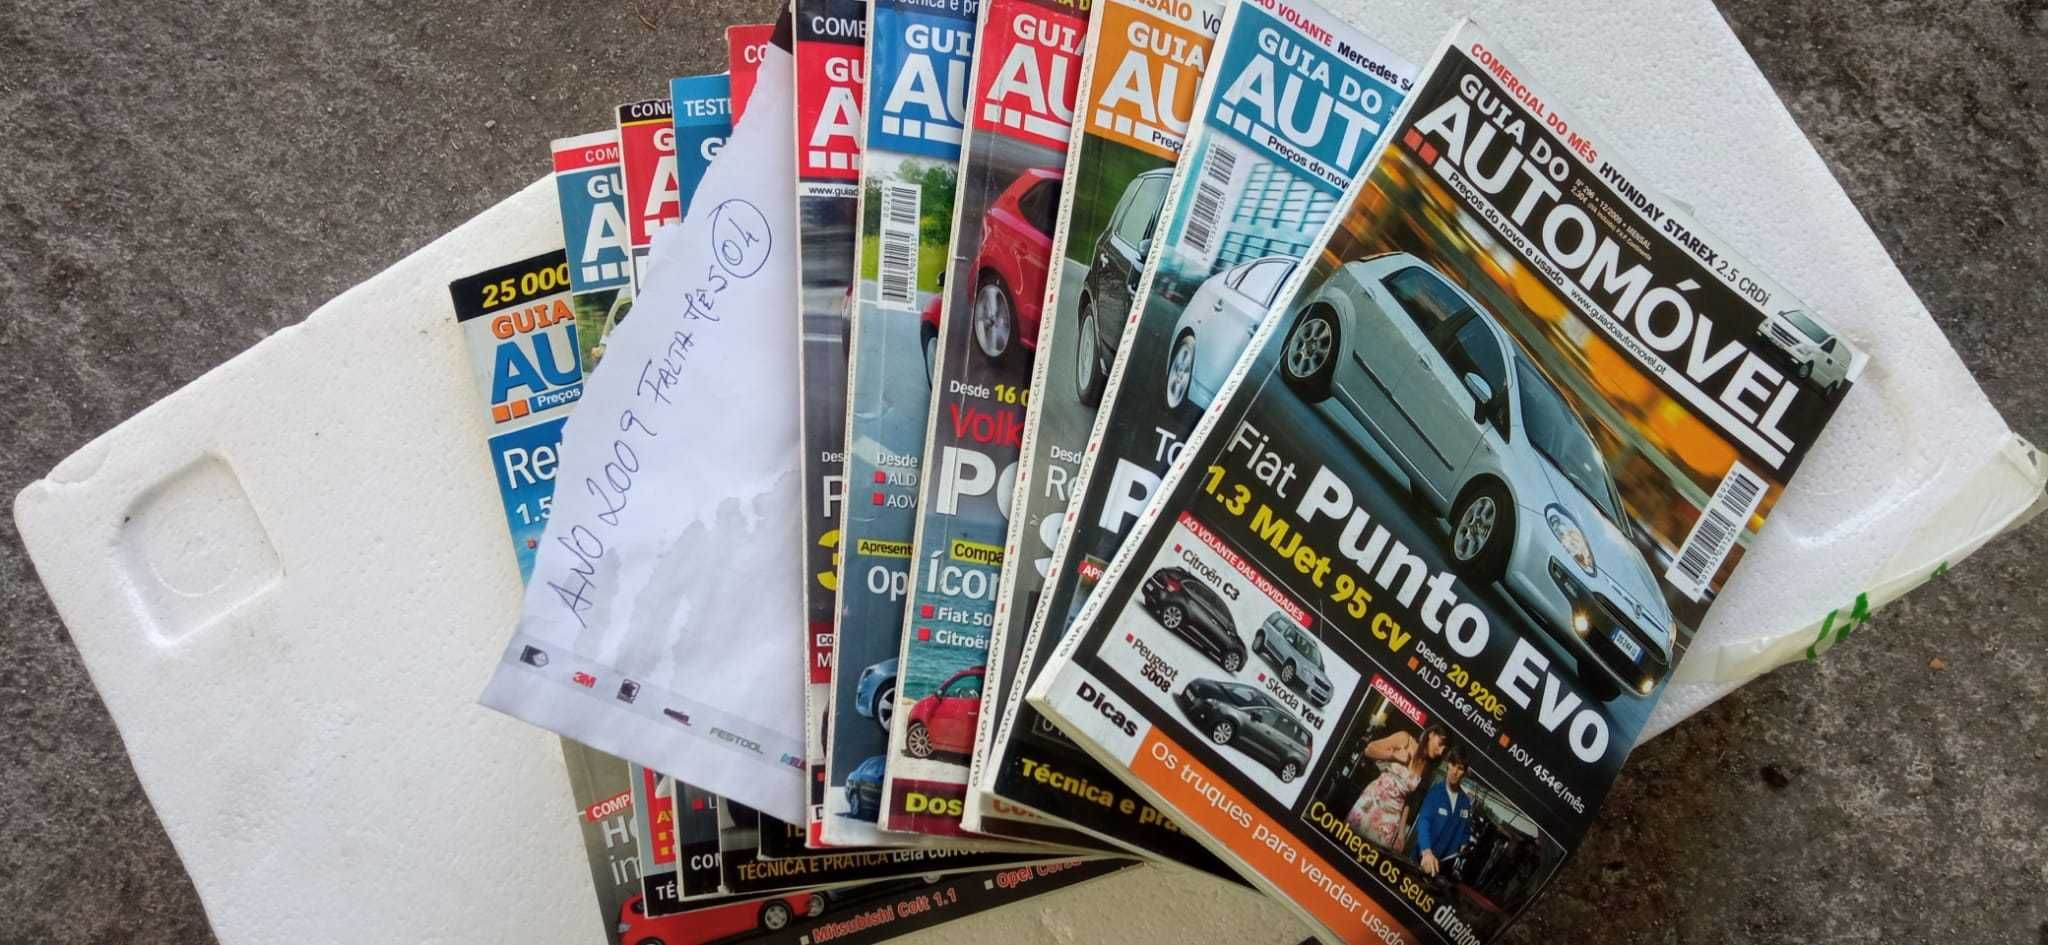 Revistas coleção "Guia do Automóvel"